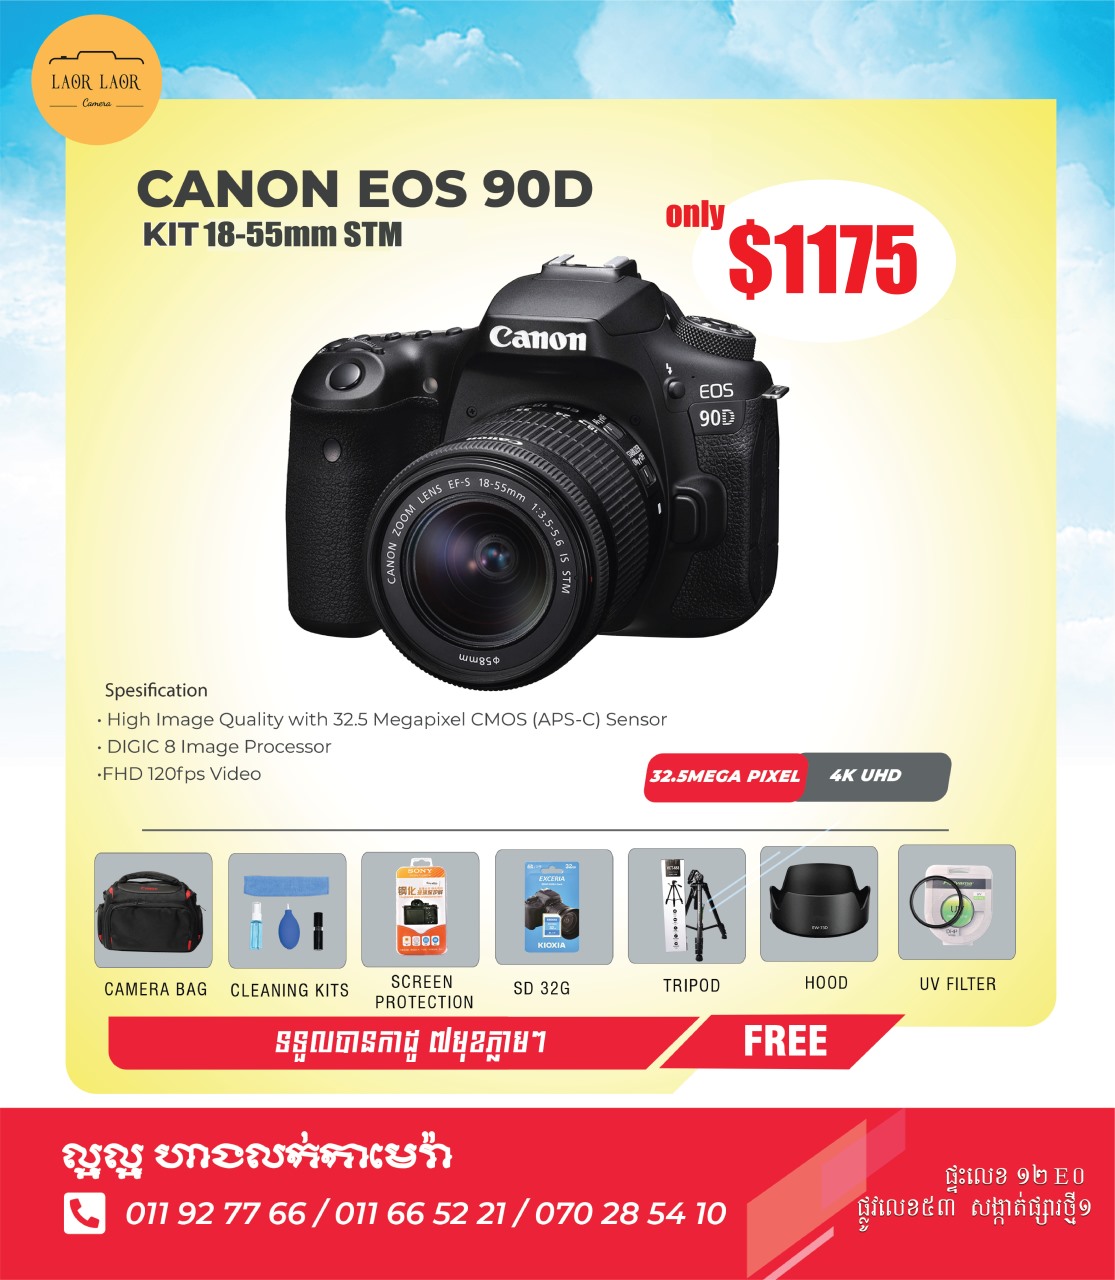 Canon EOS 90D kit 18-55mm STM (set)